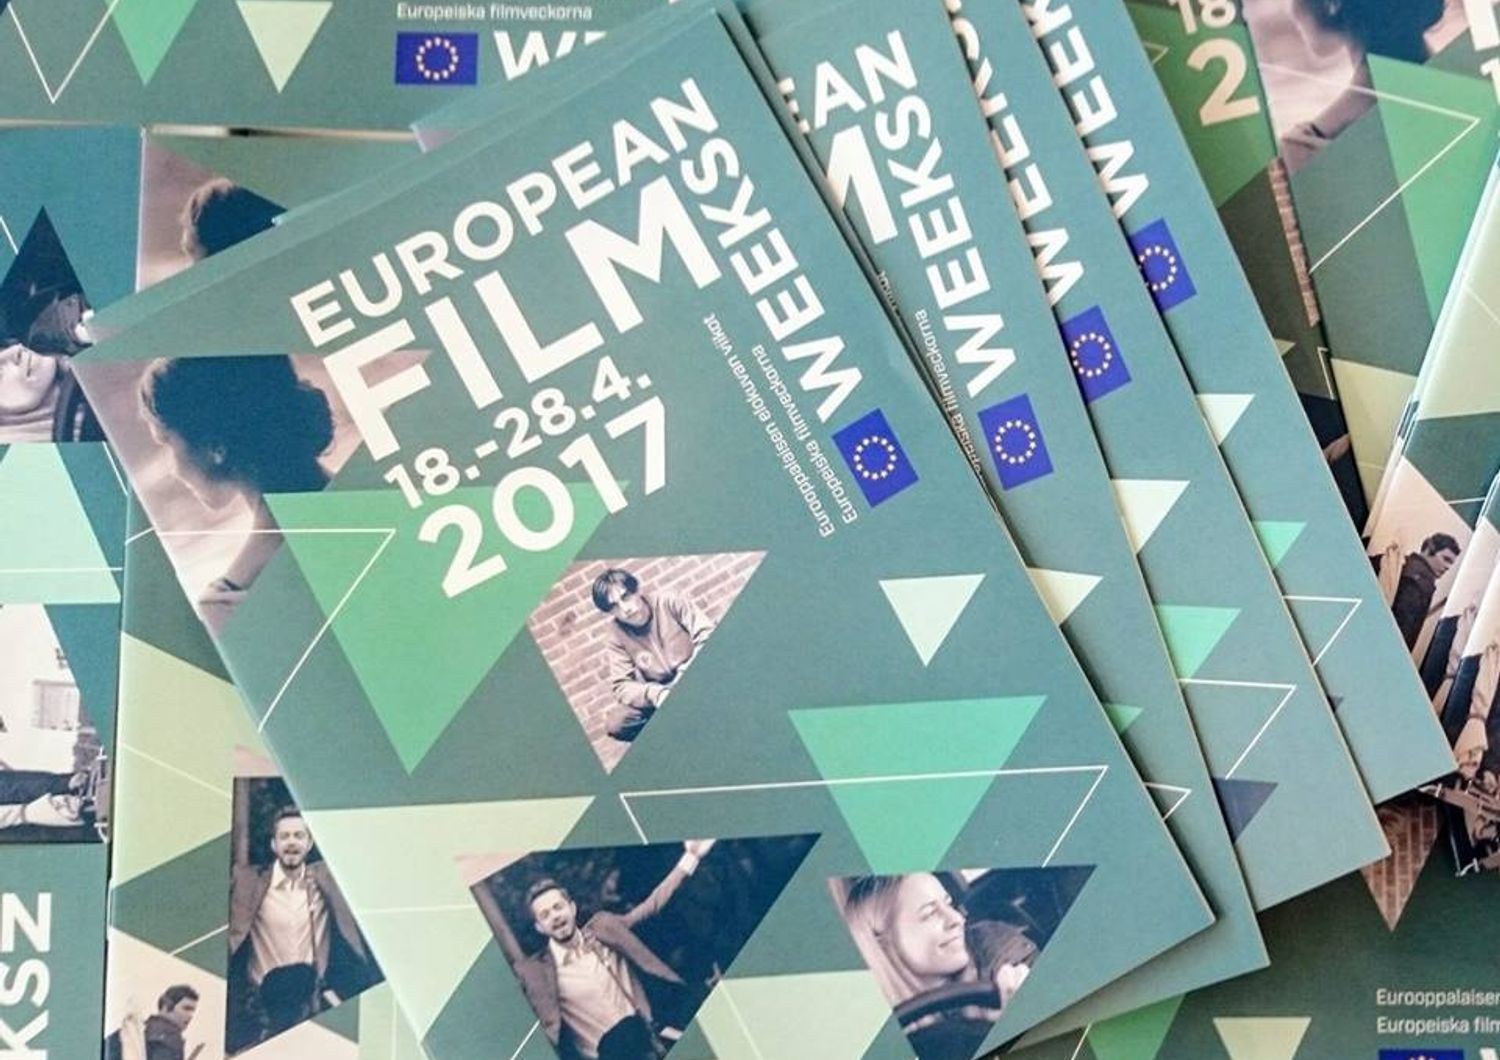 The European Film Weeks Helsinki (Facebook)&nbsp;